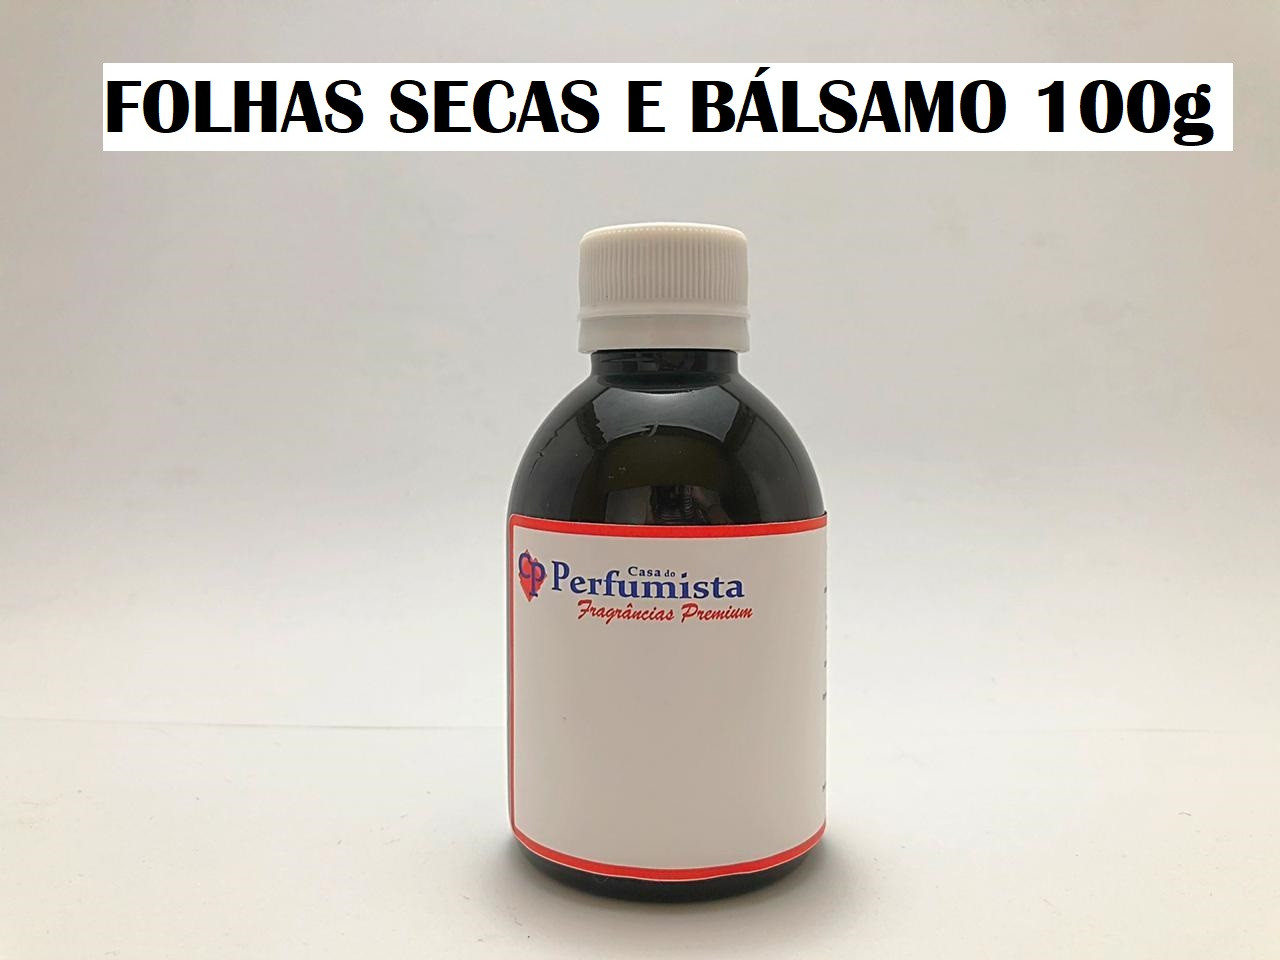 FOLHAS SECAS E BÁLSAMO - 100g